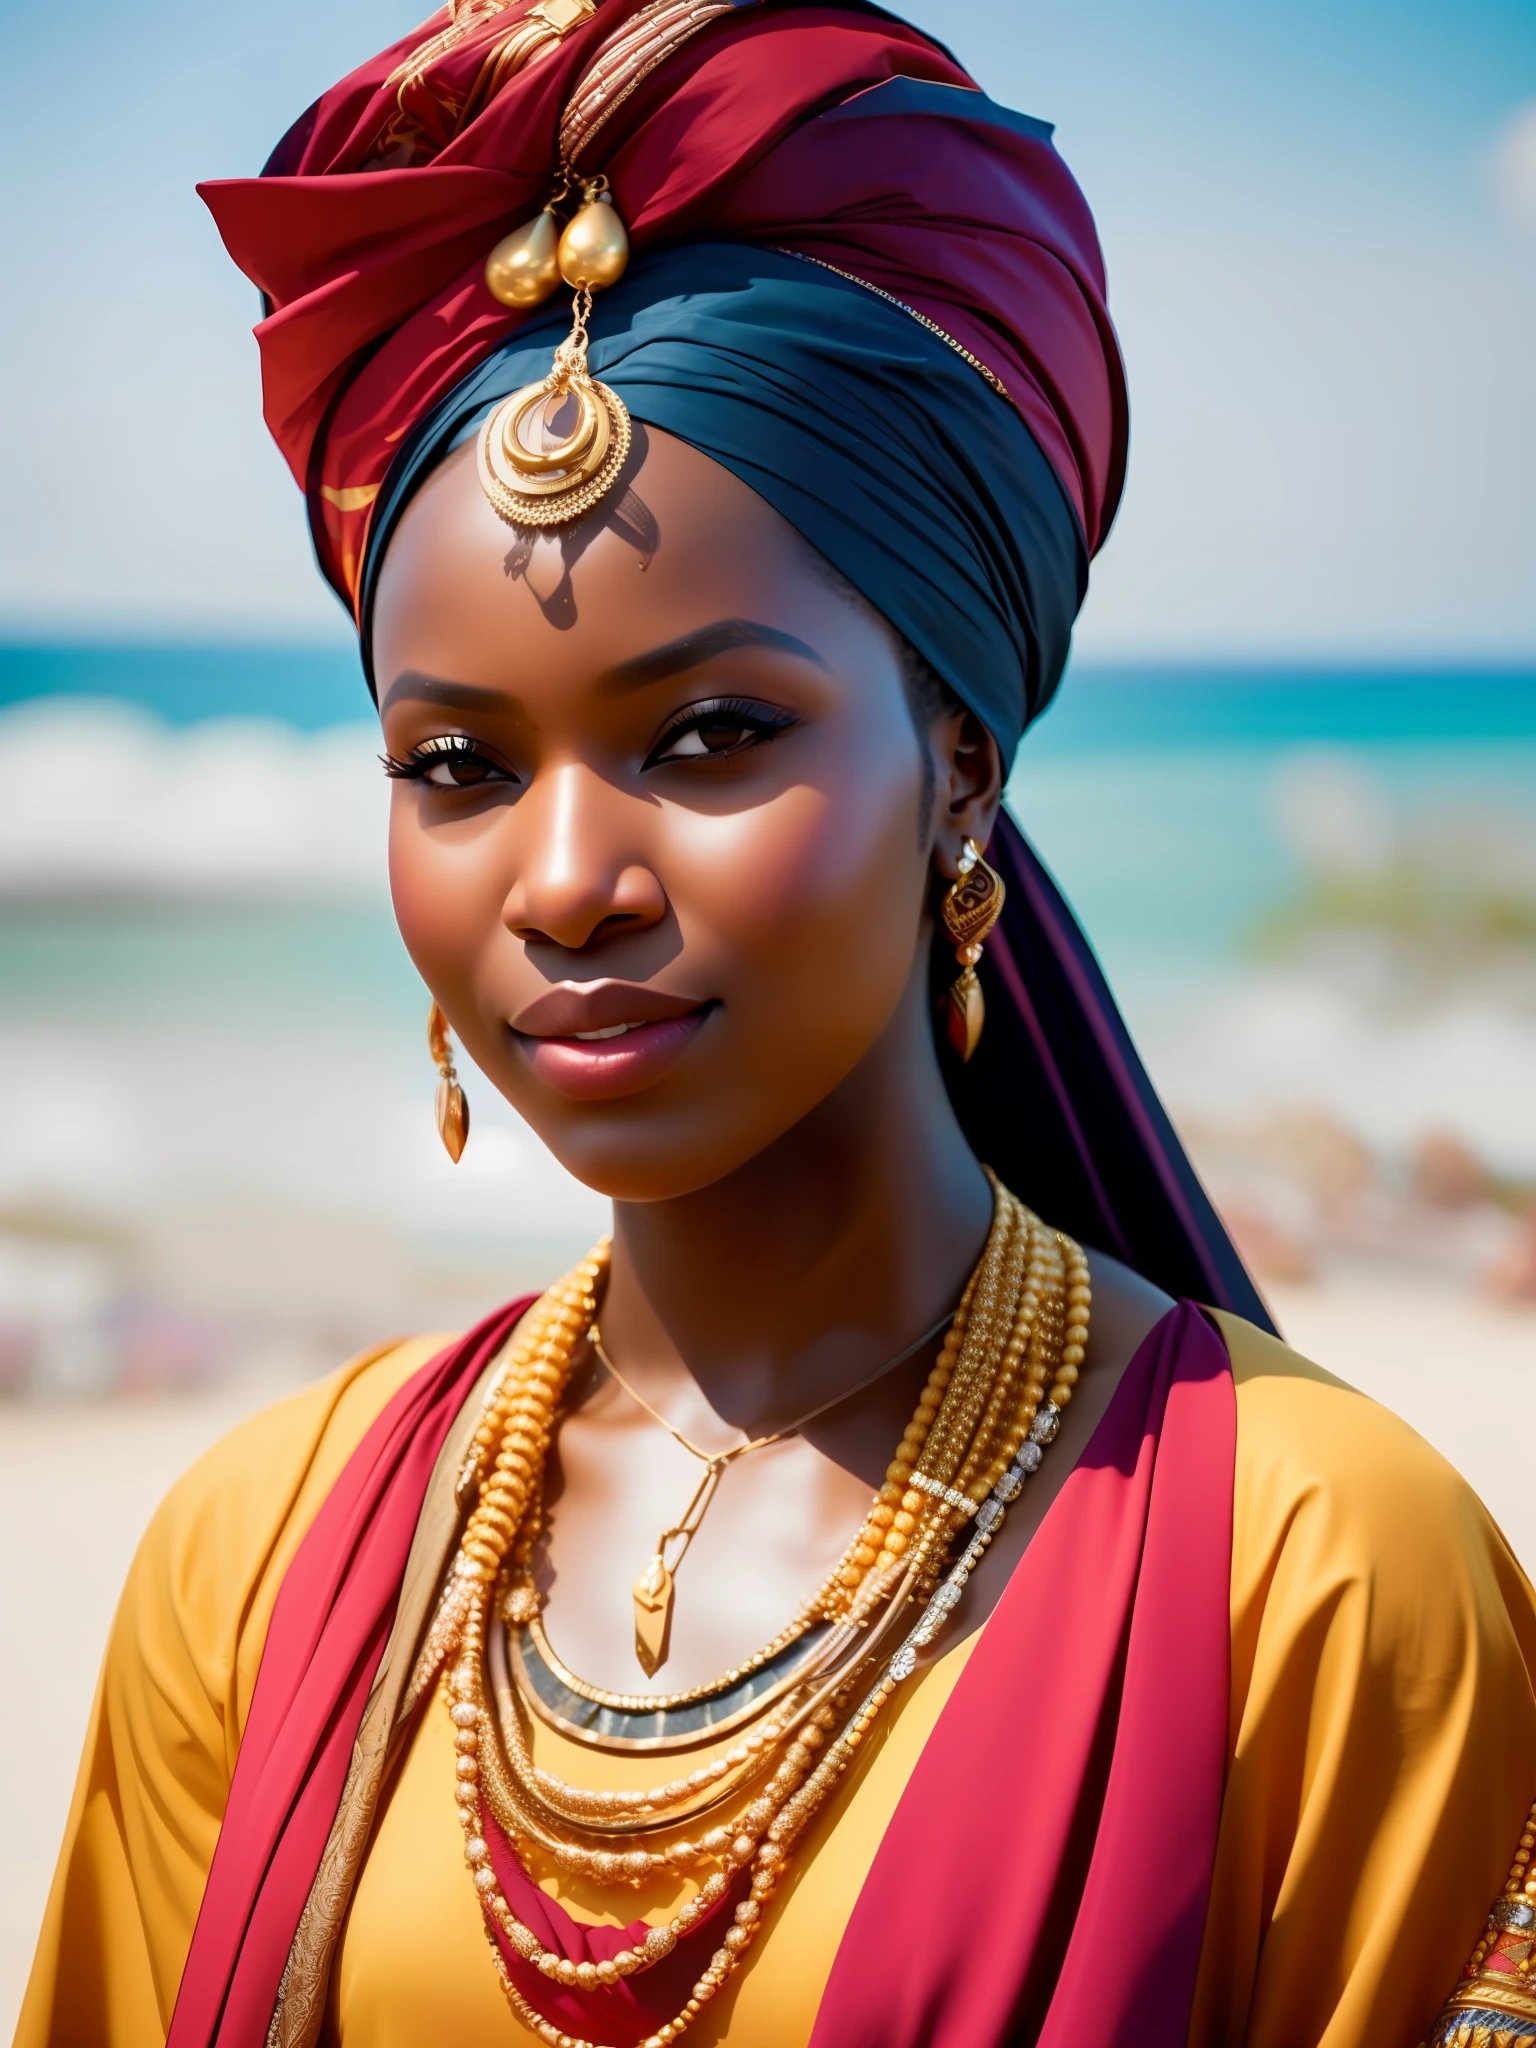 putain_science-fiction, putain_science-fiction_v2, portrait d&#39;une jeune très belle femme africaine, devant une plage, Des vêtements riches et colorés, turban et bijoux africains dorés, fermer, pose et attitude royales. putain_Cinéma_v2. putain_Cinéma_v2